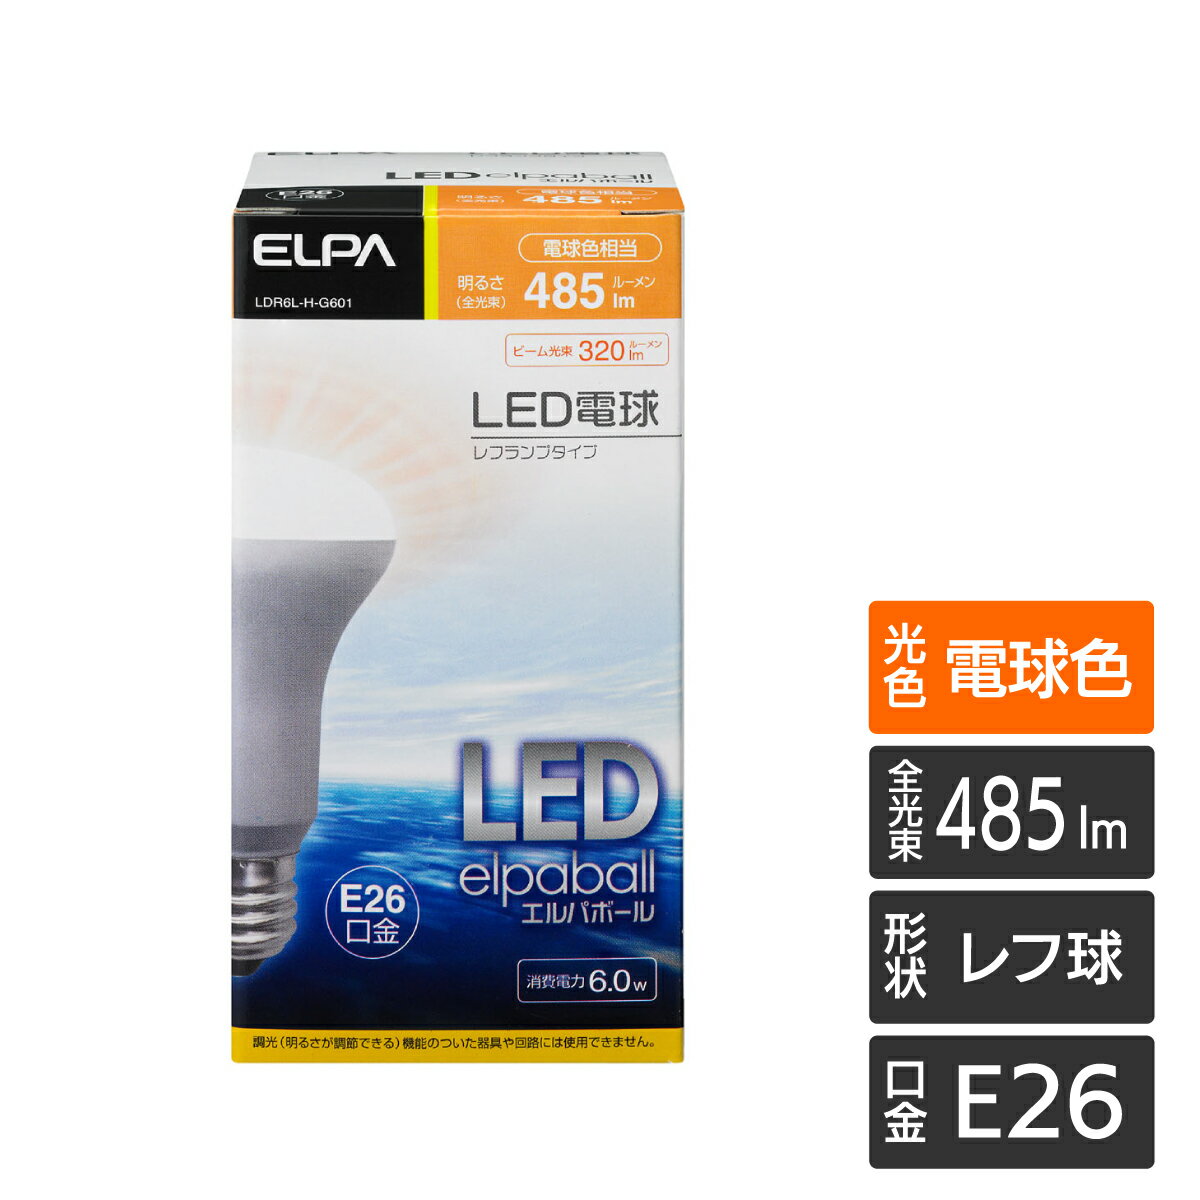 エルパ LED電球 レフ球形 E26 電球色 LDR6L-H-G601